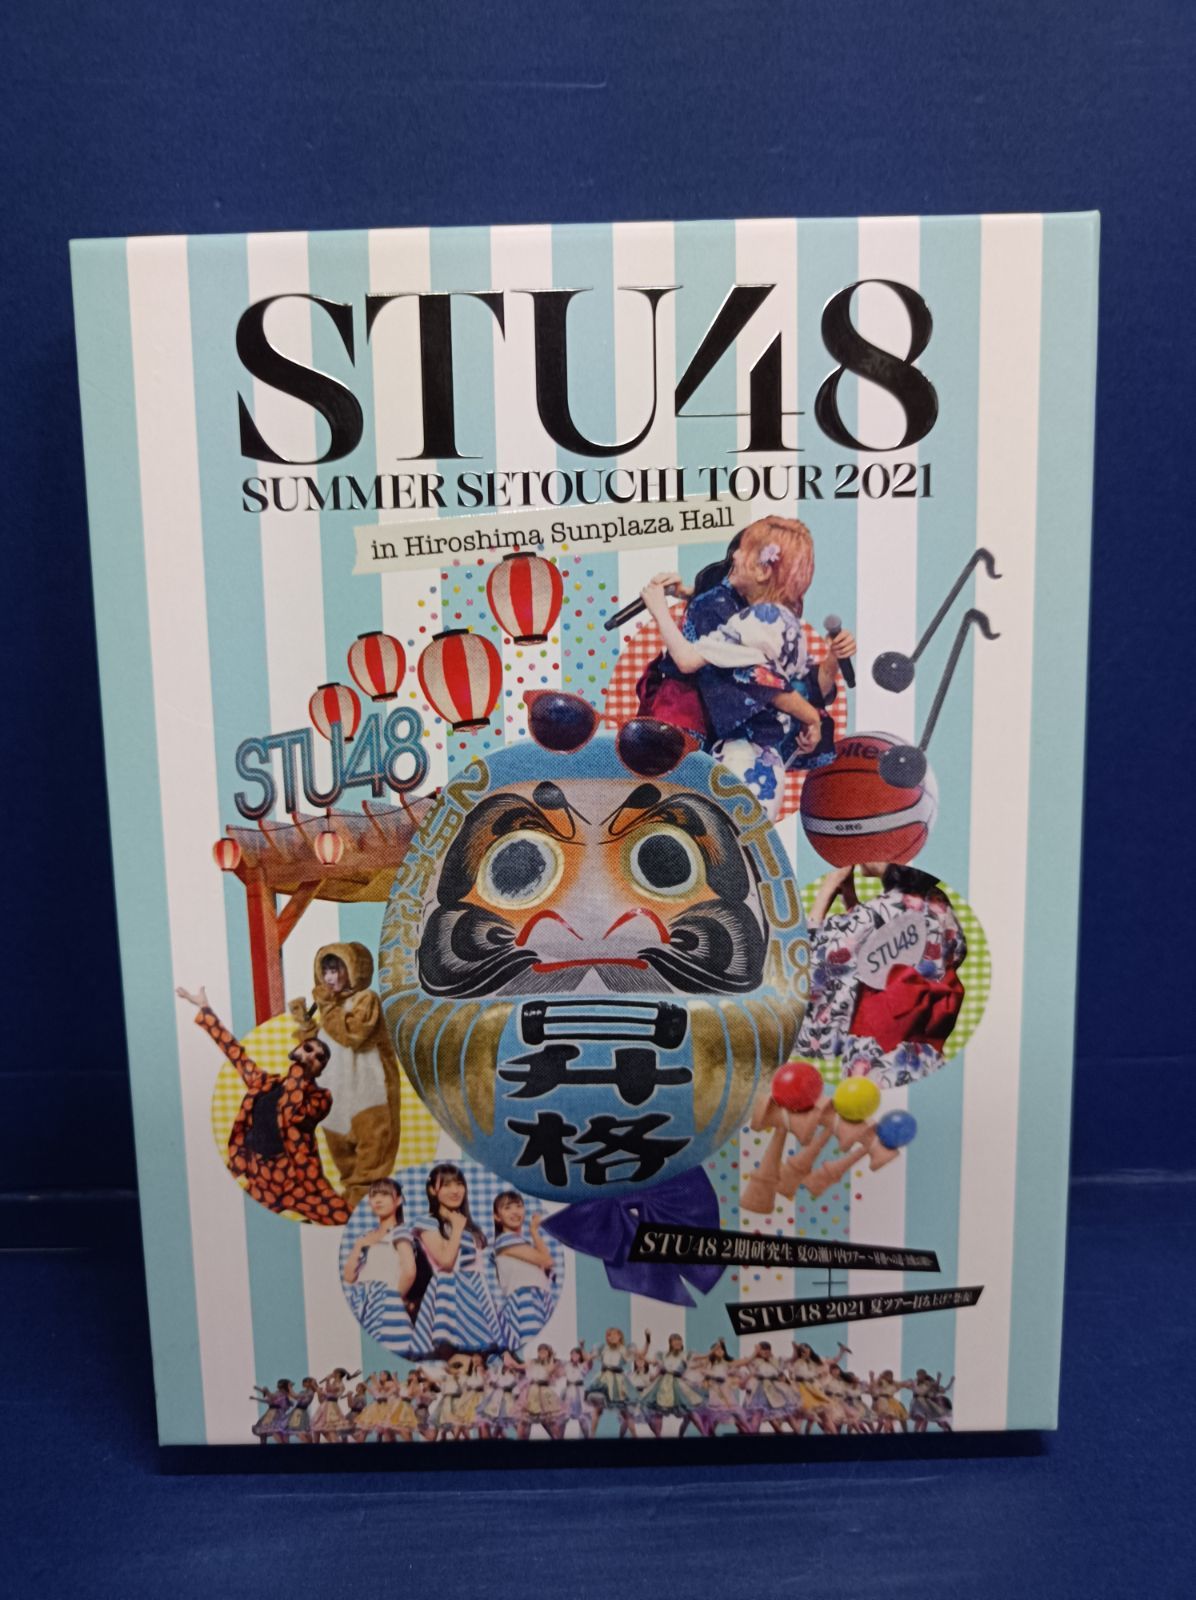 A06 STU48 Summer Setouchi Tour 2021 in Hiroshima Sunplaza Hall 